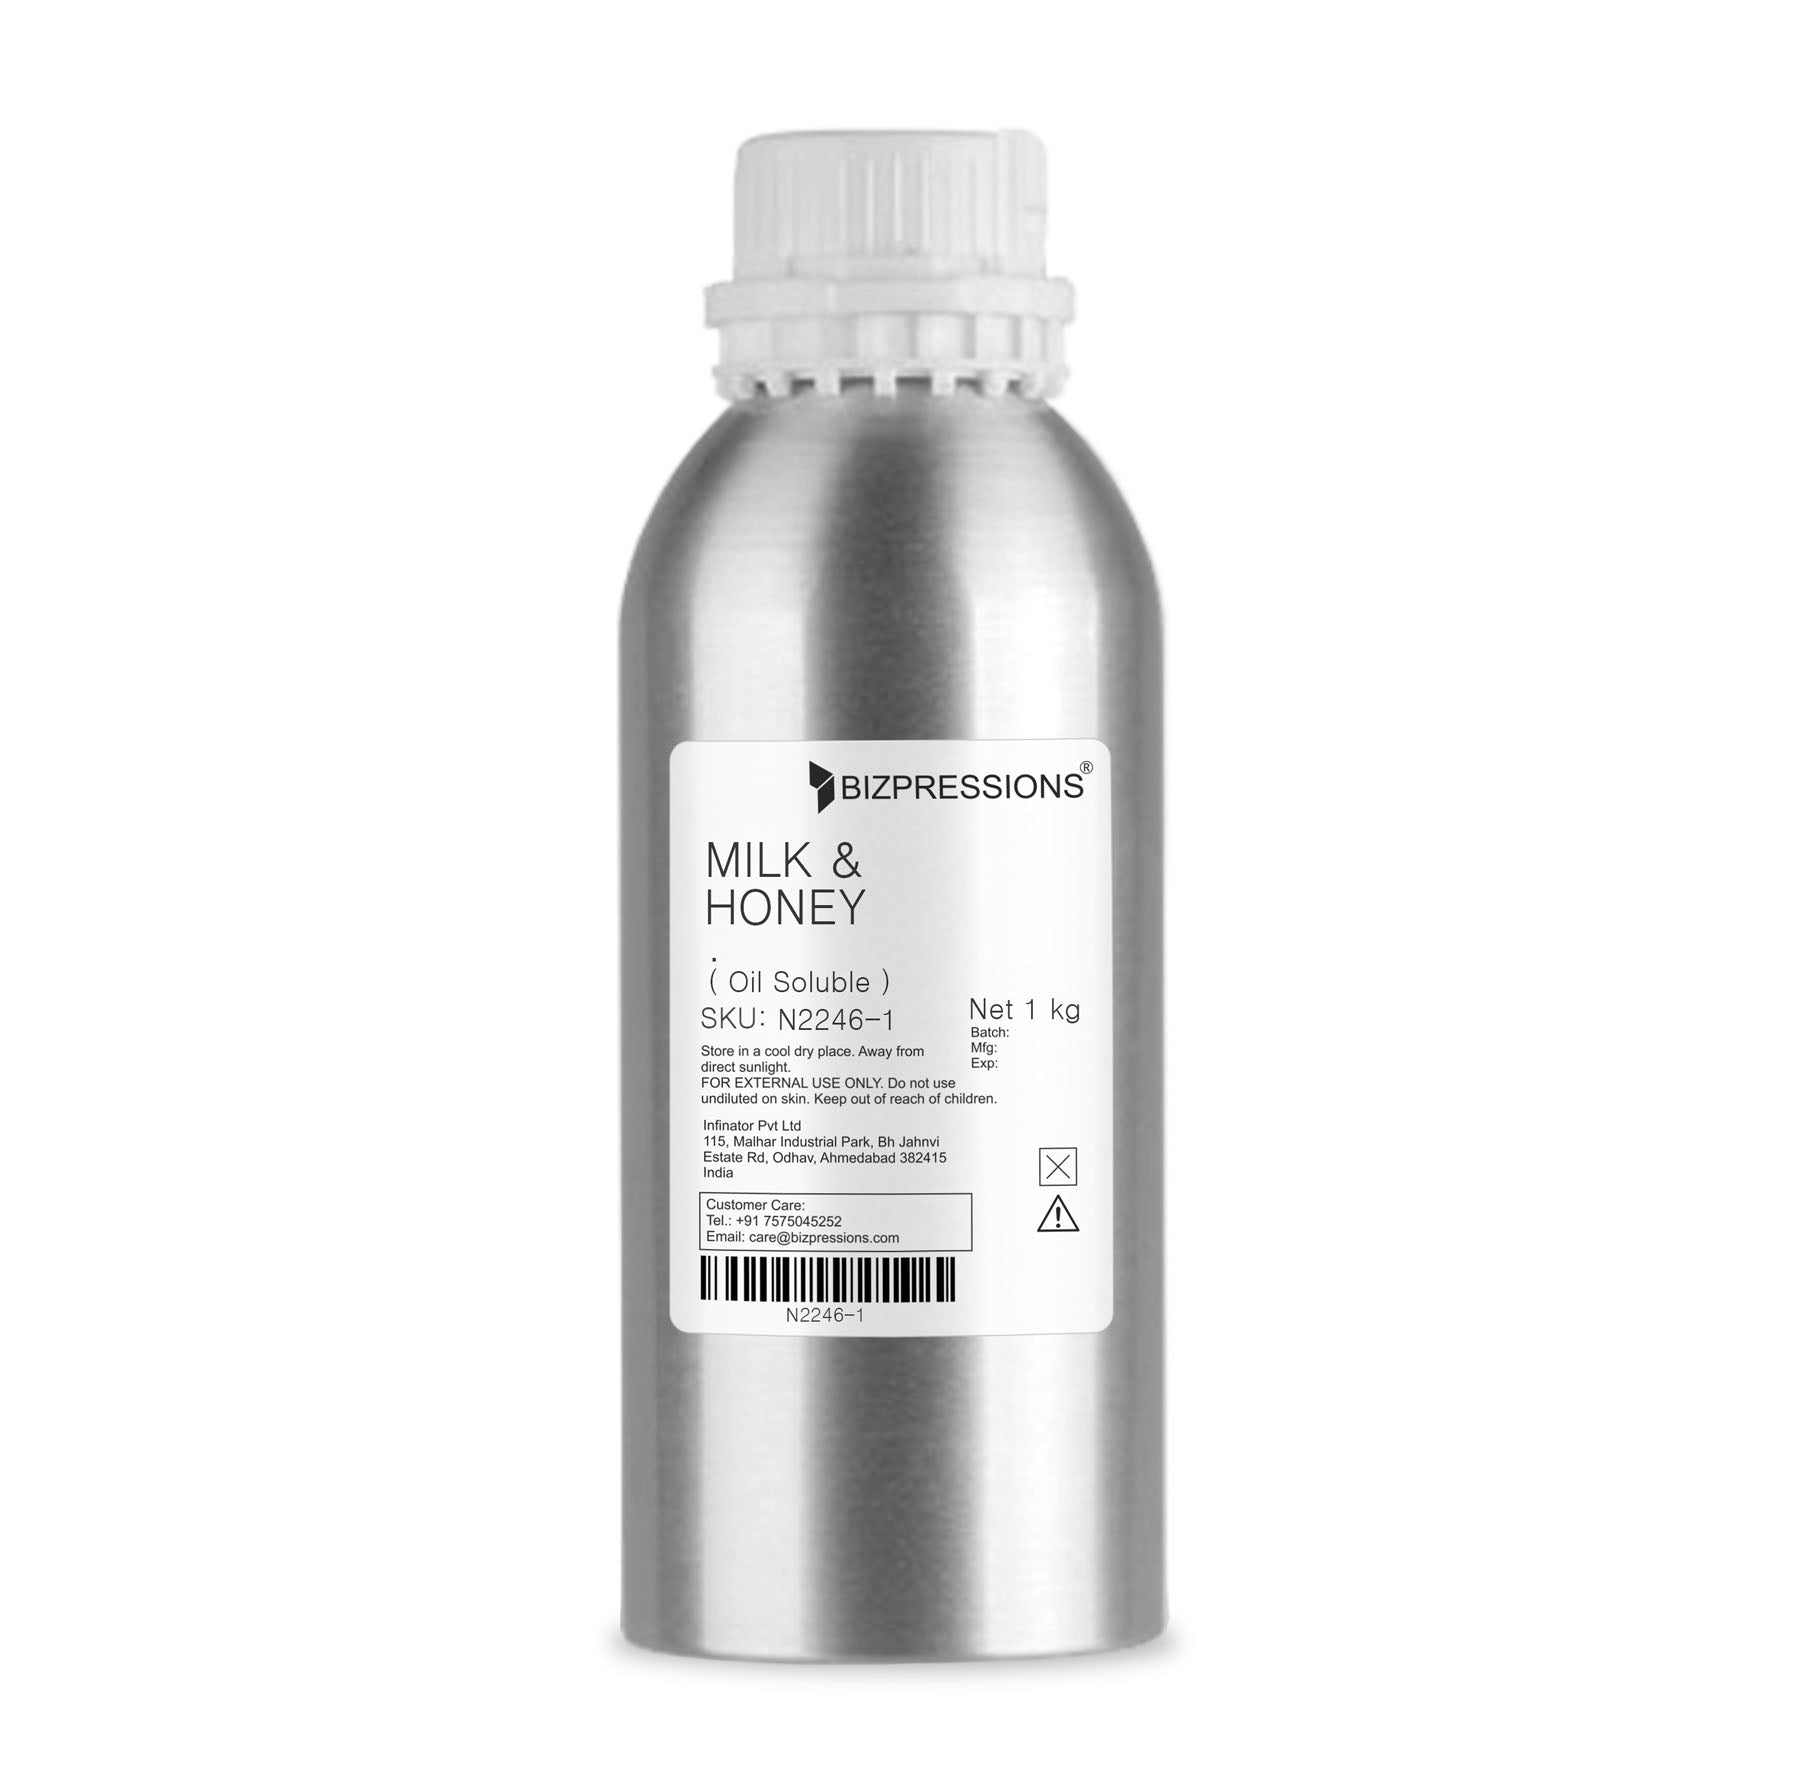 MILK & HONEY - Fragrance ( Oil Soluble ) - 1 kg